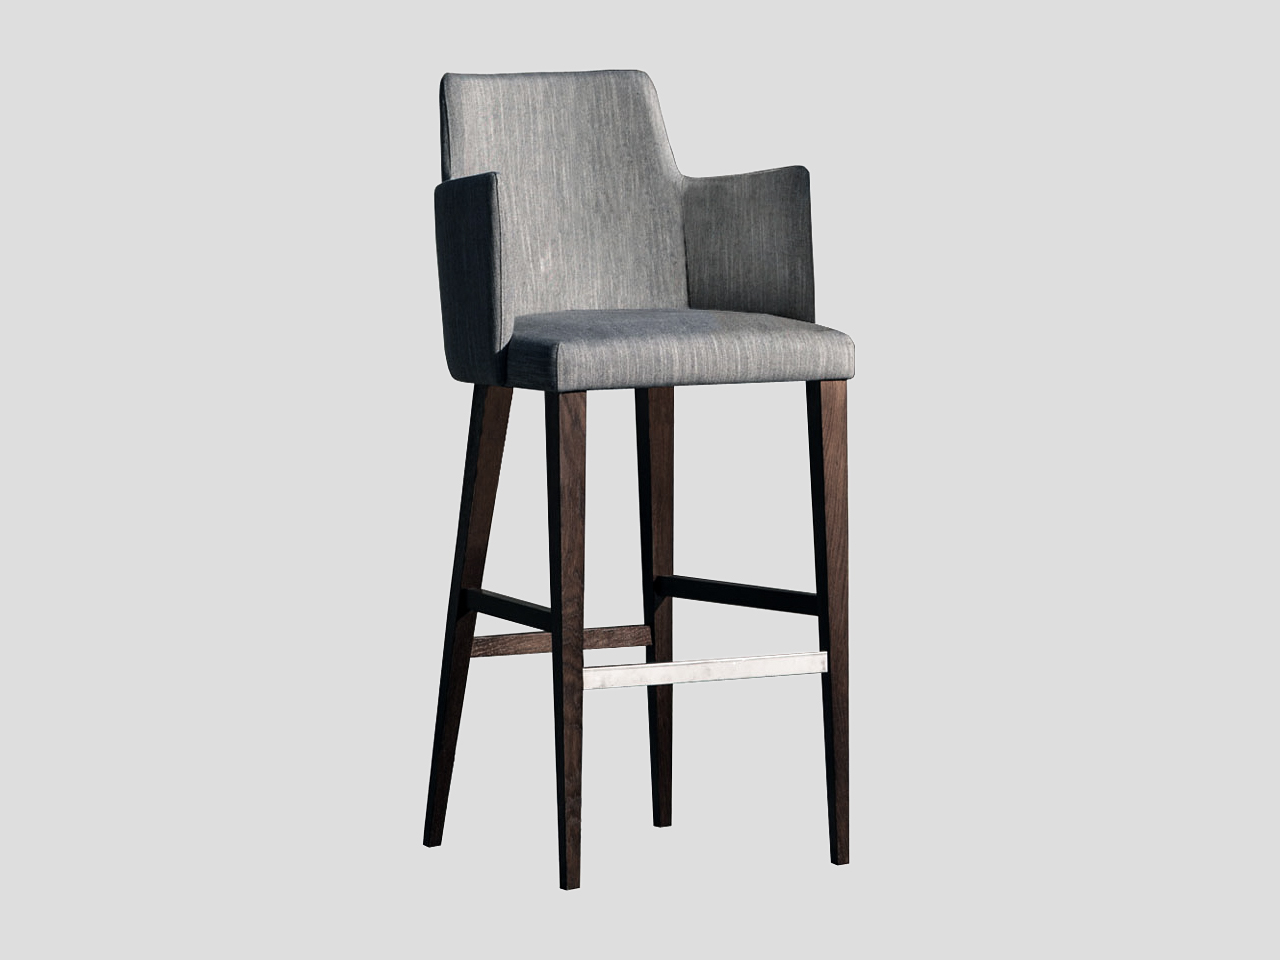 Moderna tapacirana barska stolica od punog drveta materijal po zelji SOFIA R Linea Milanovic